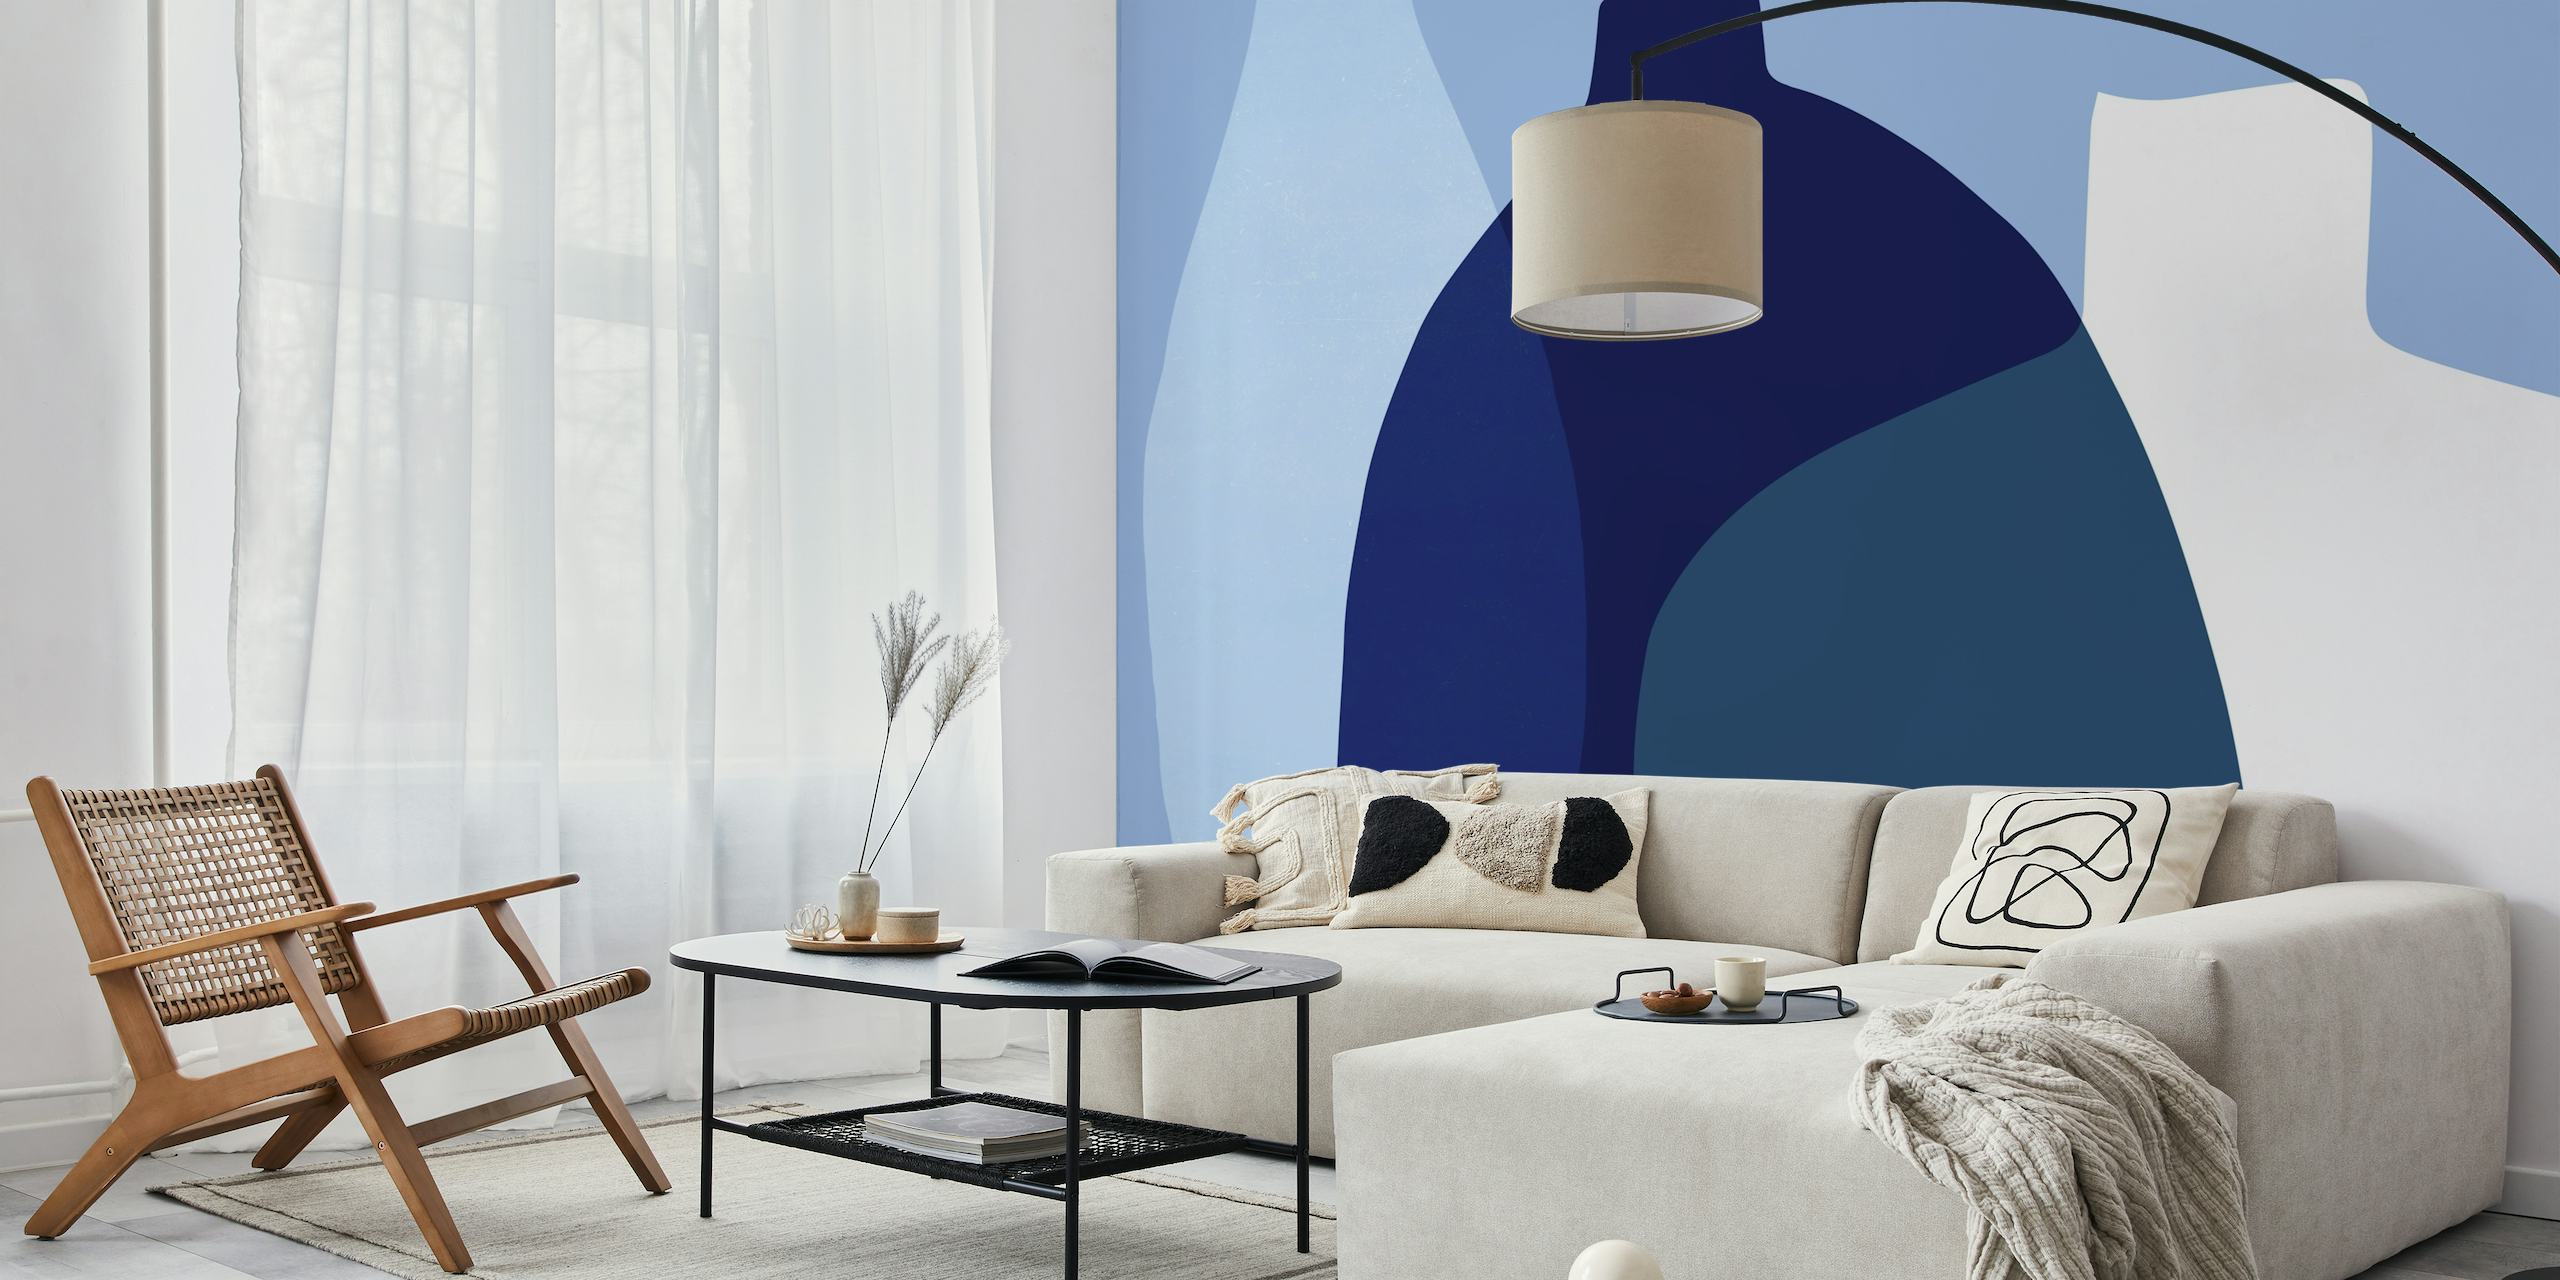 Zidna slika apstraktne staklene vaze s preklapajućim oblicima u nijansama plave i neutralnih boja